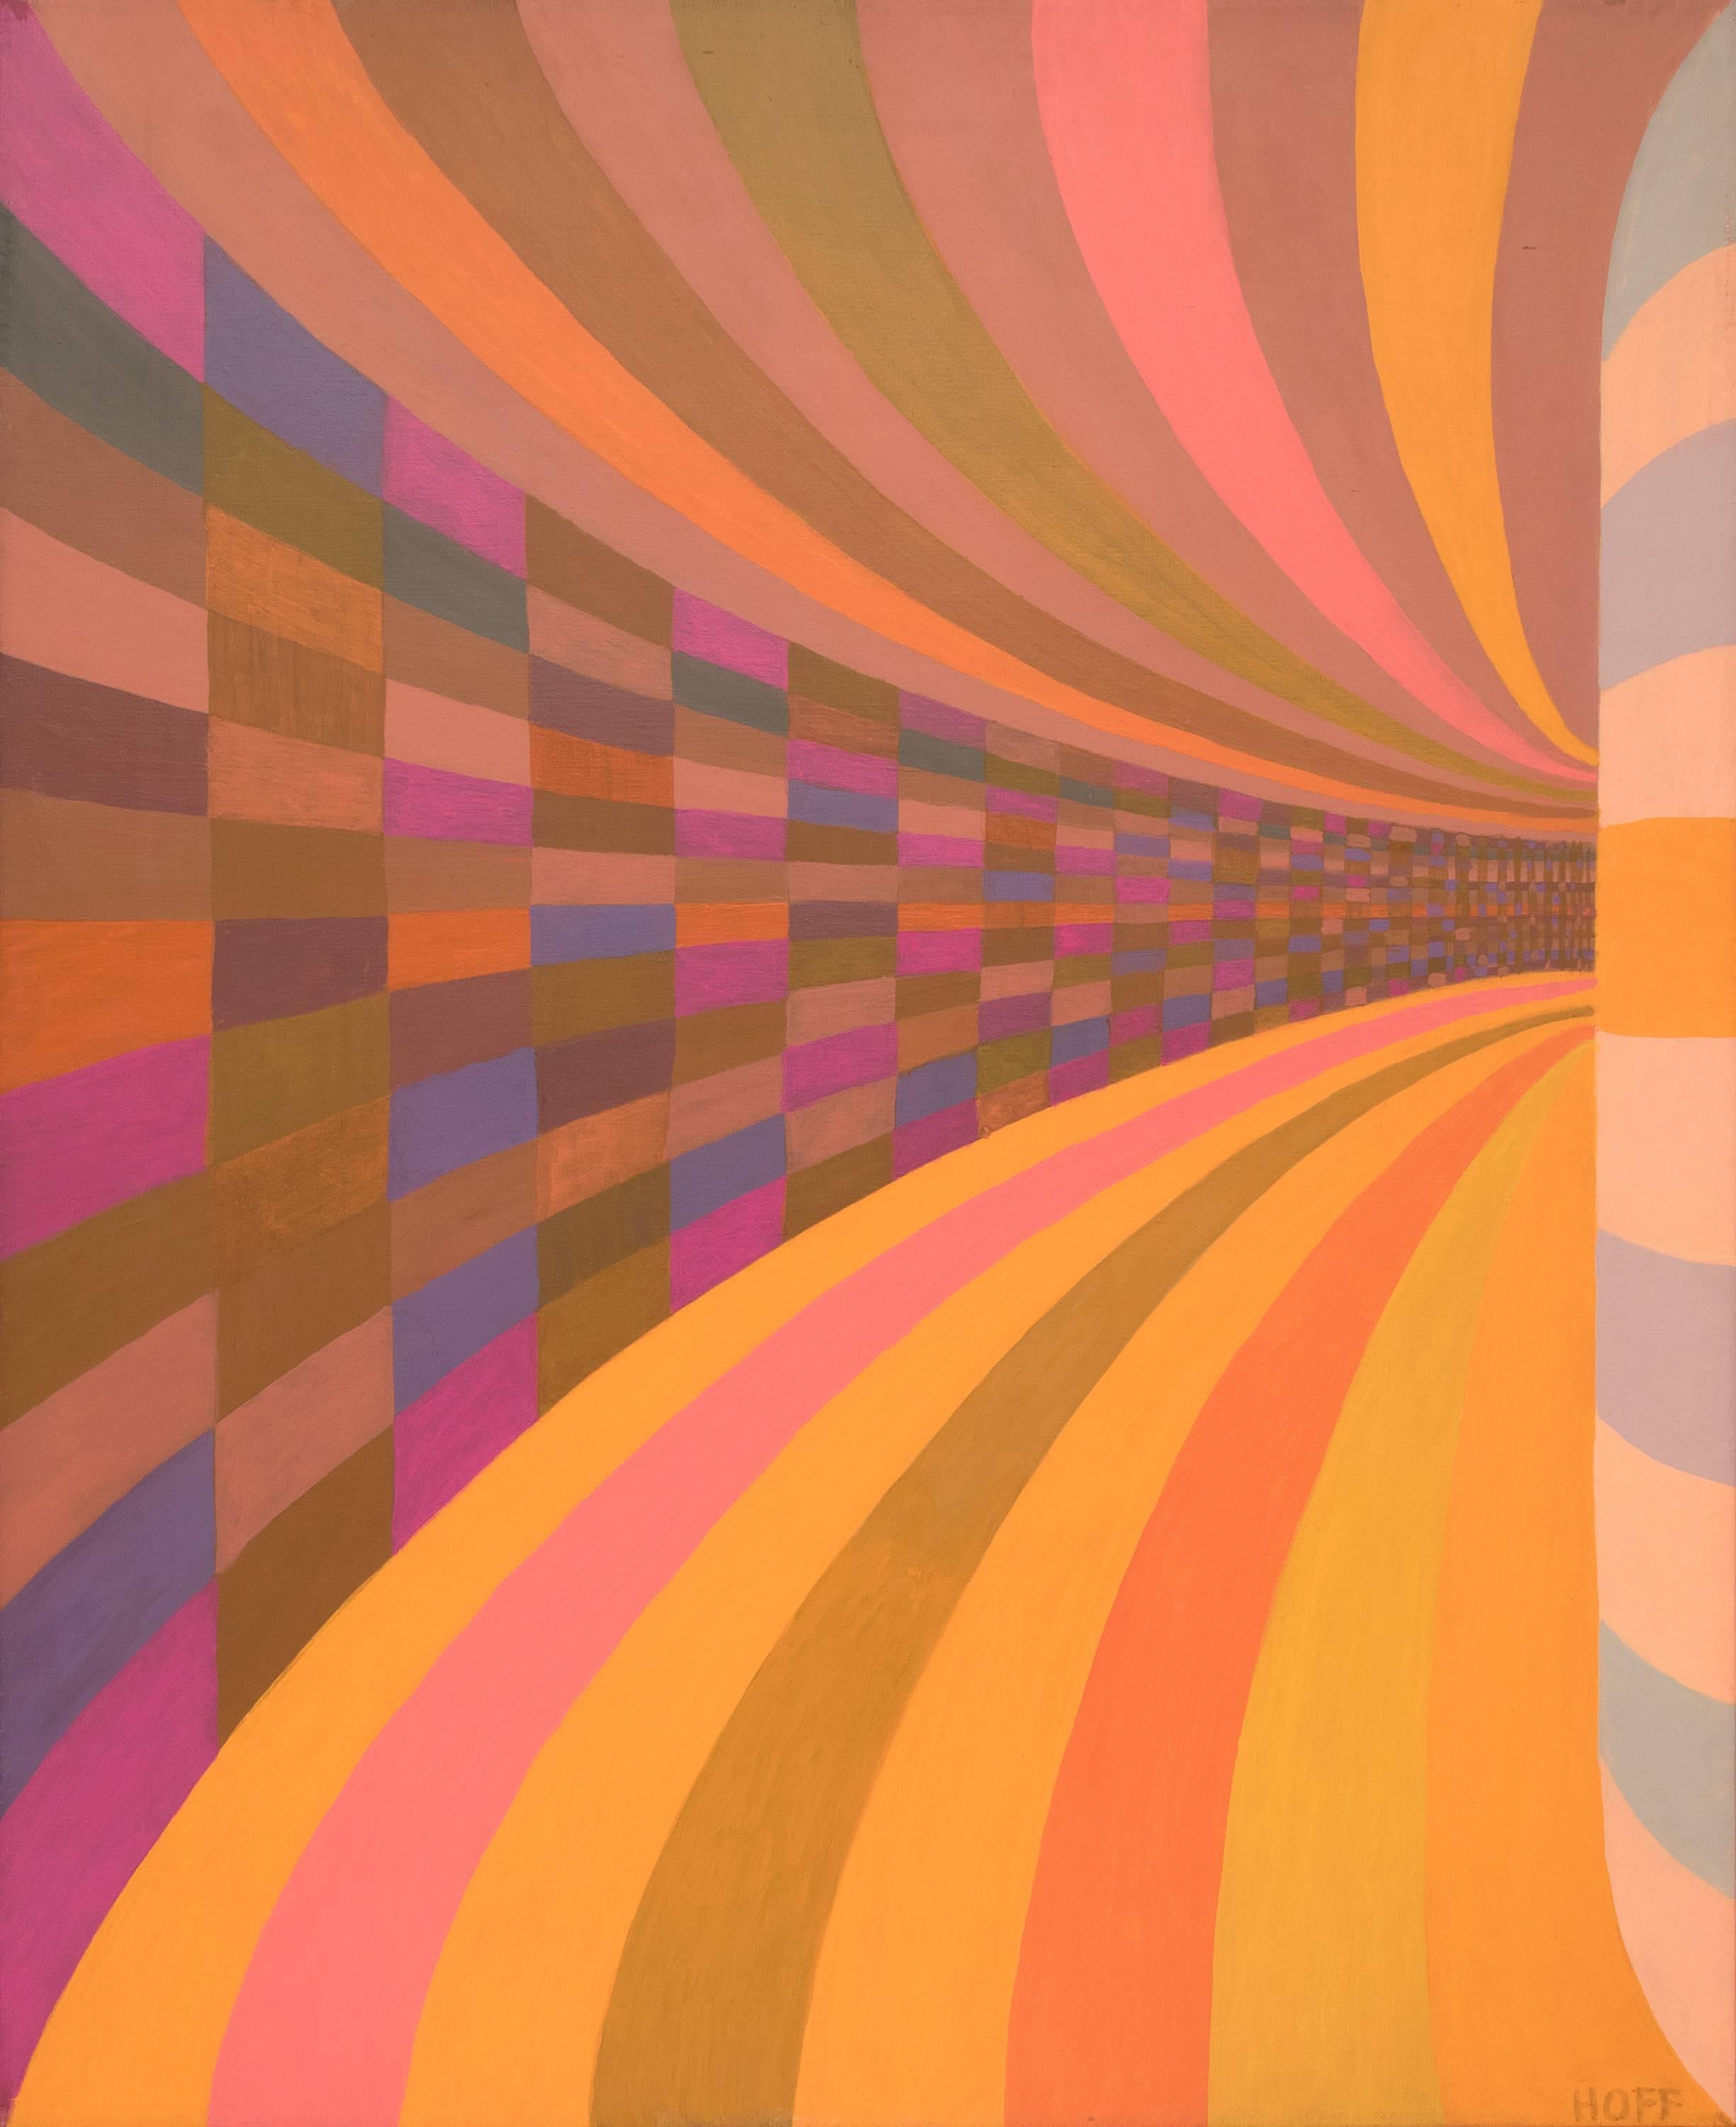 Tunnel de couleurs, peinture à l'huile géométrique abstraite colorée des années 1970, rose, orange, bleu - Painting de Margo Hoff